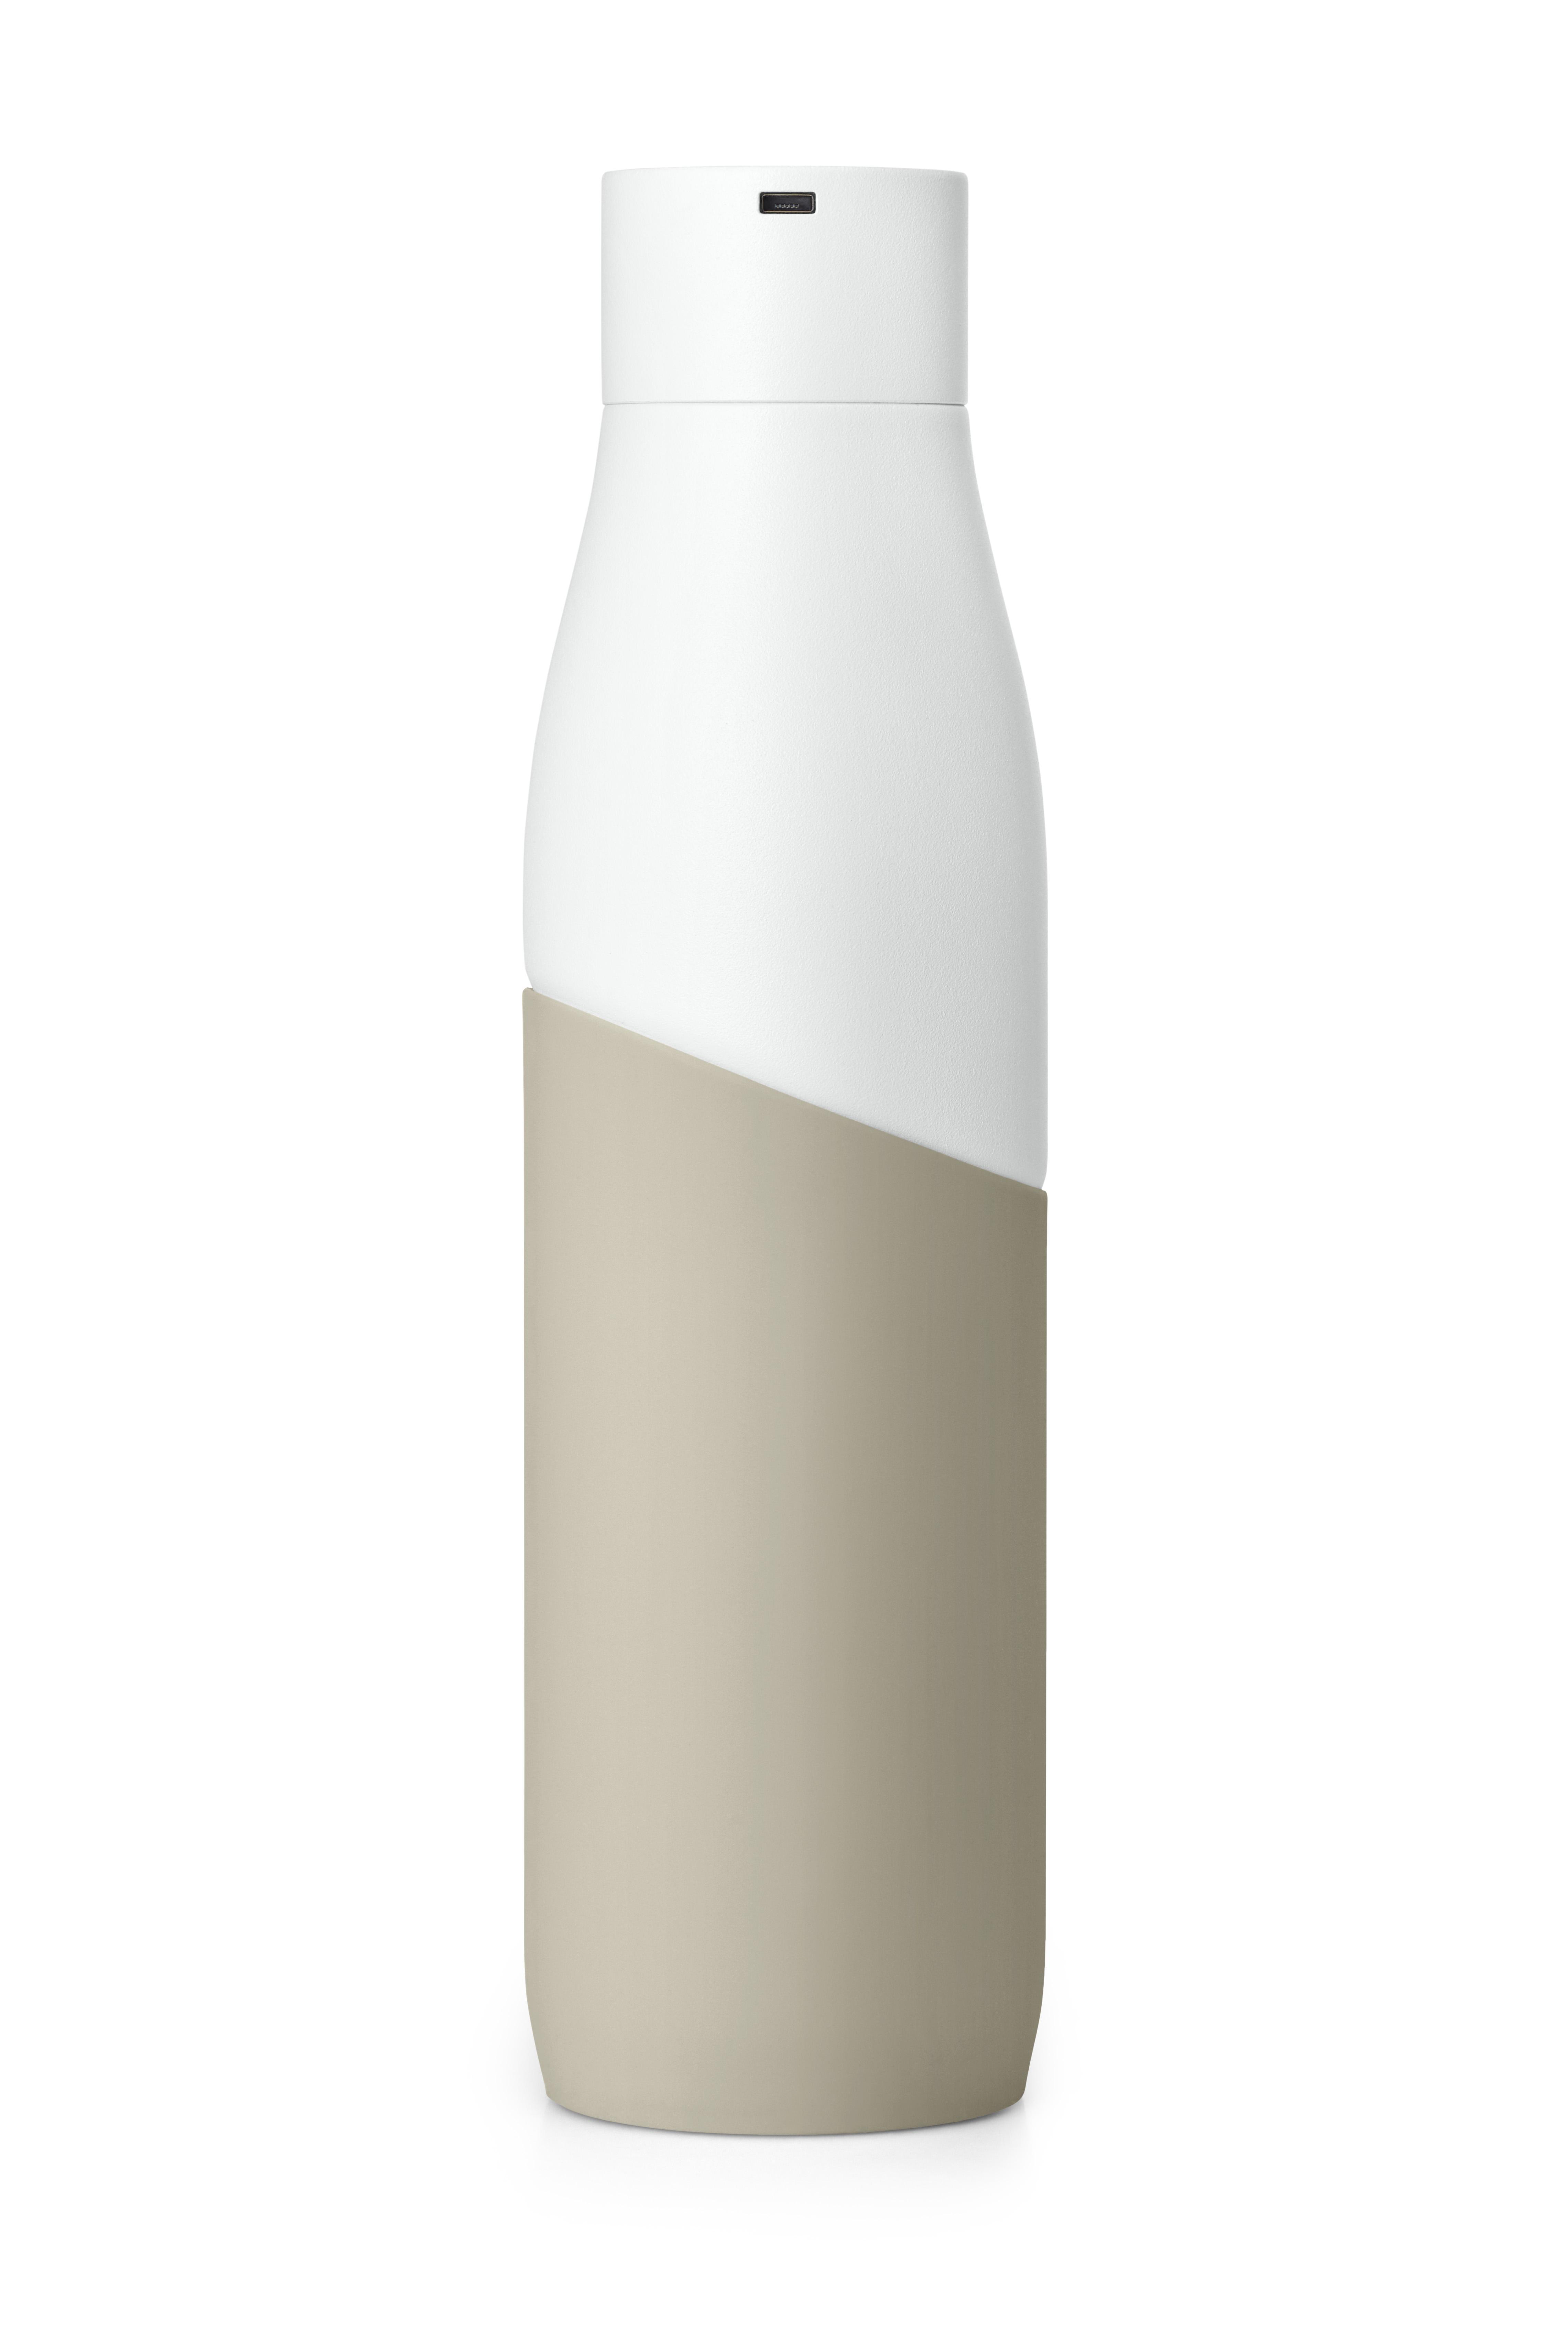 LARQ BSWD095A Movement Terra Trinkflasche white/Dune edition Bottle